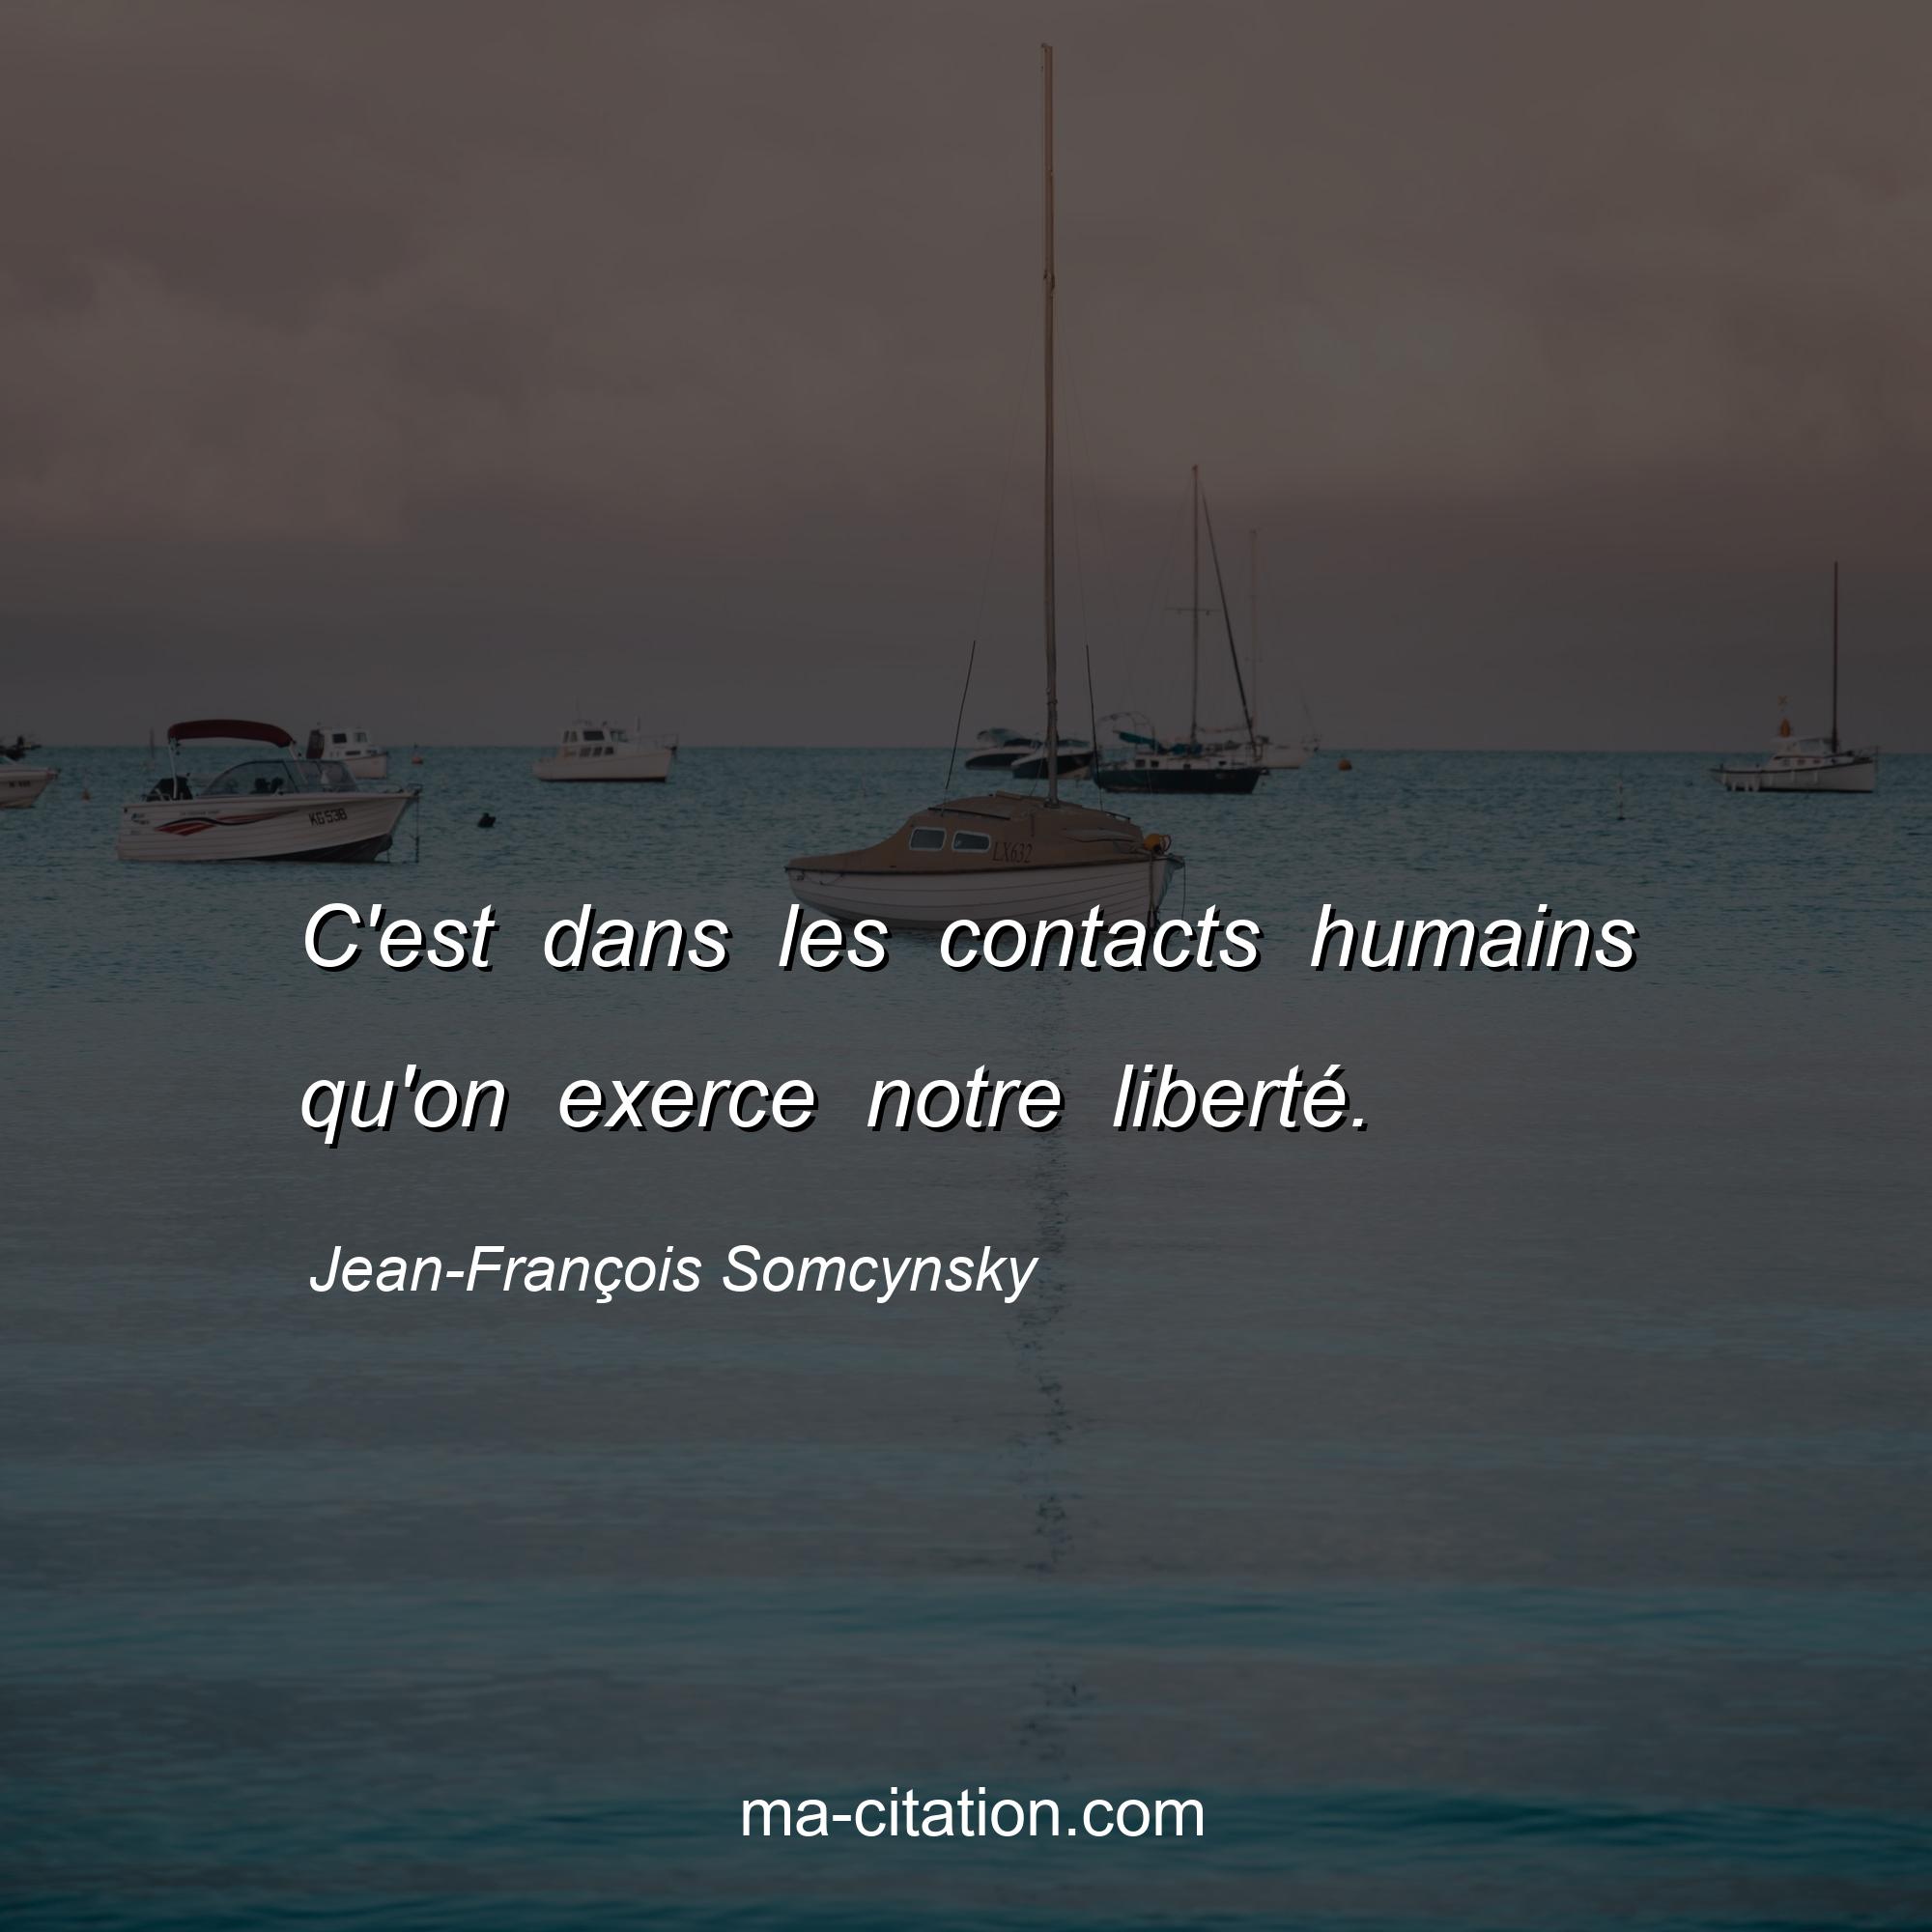 Jean-François Somcynsky : C'est dans les contacts humains qu'on exerce notre liberté.